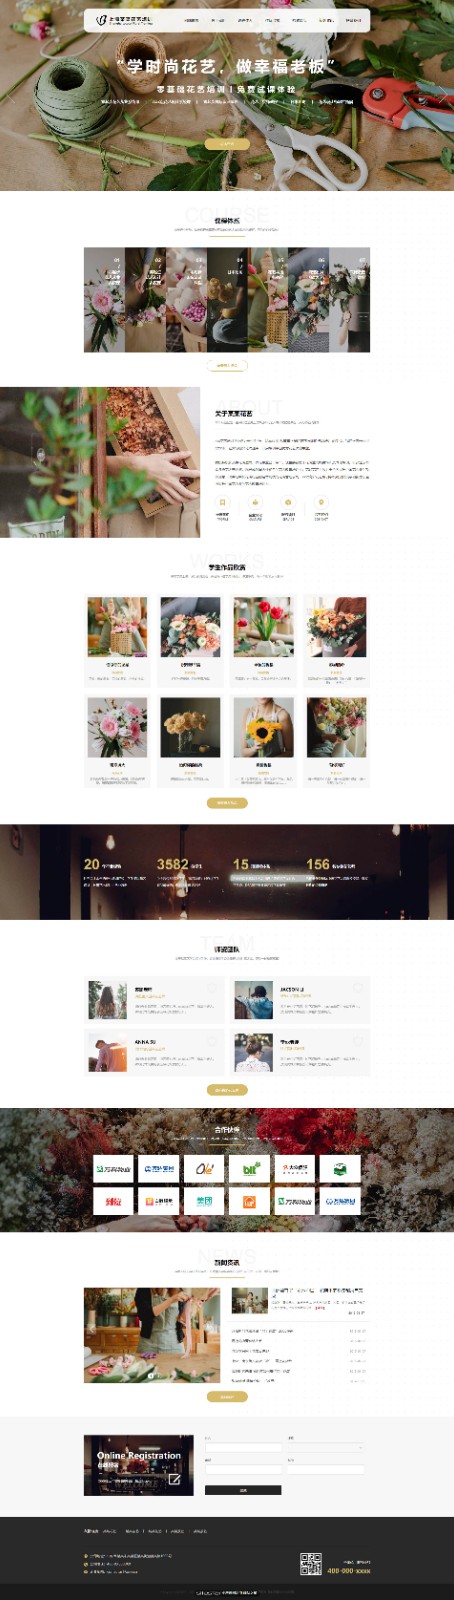 企业网站精美模板-flowers-1139977